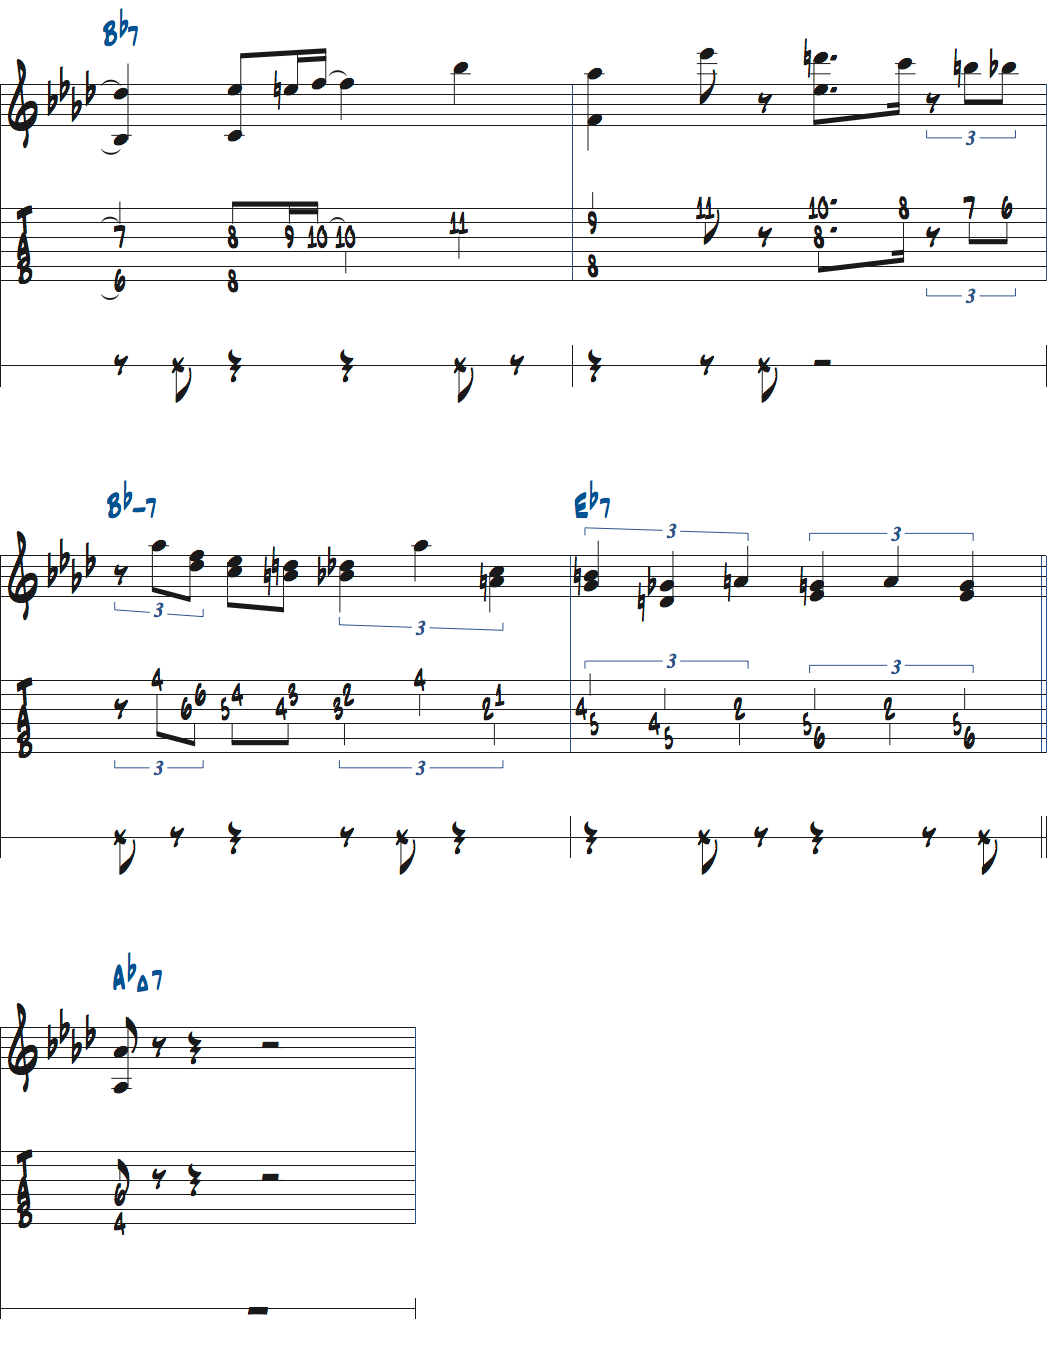 メトロノームを2拍半ごとに鳴らして練習するスウィング（ドナ・リー）のノリページ10楽譜